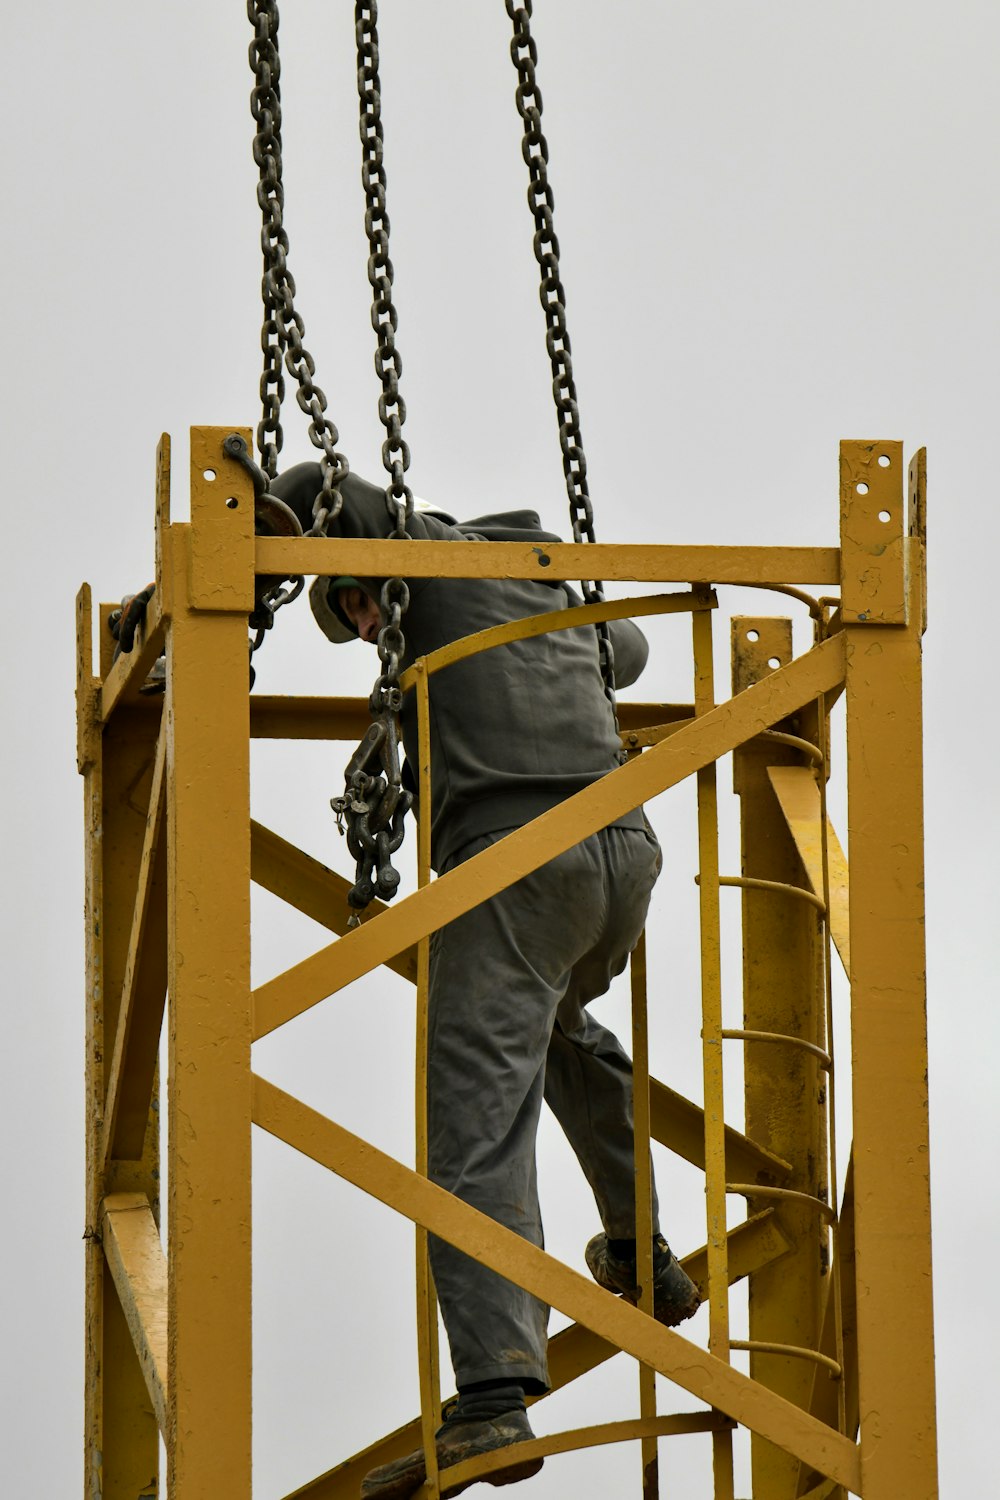 a person climbing a ladder